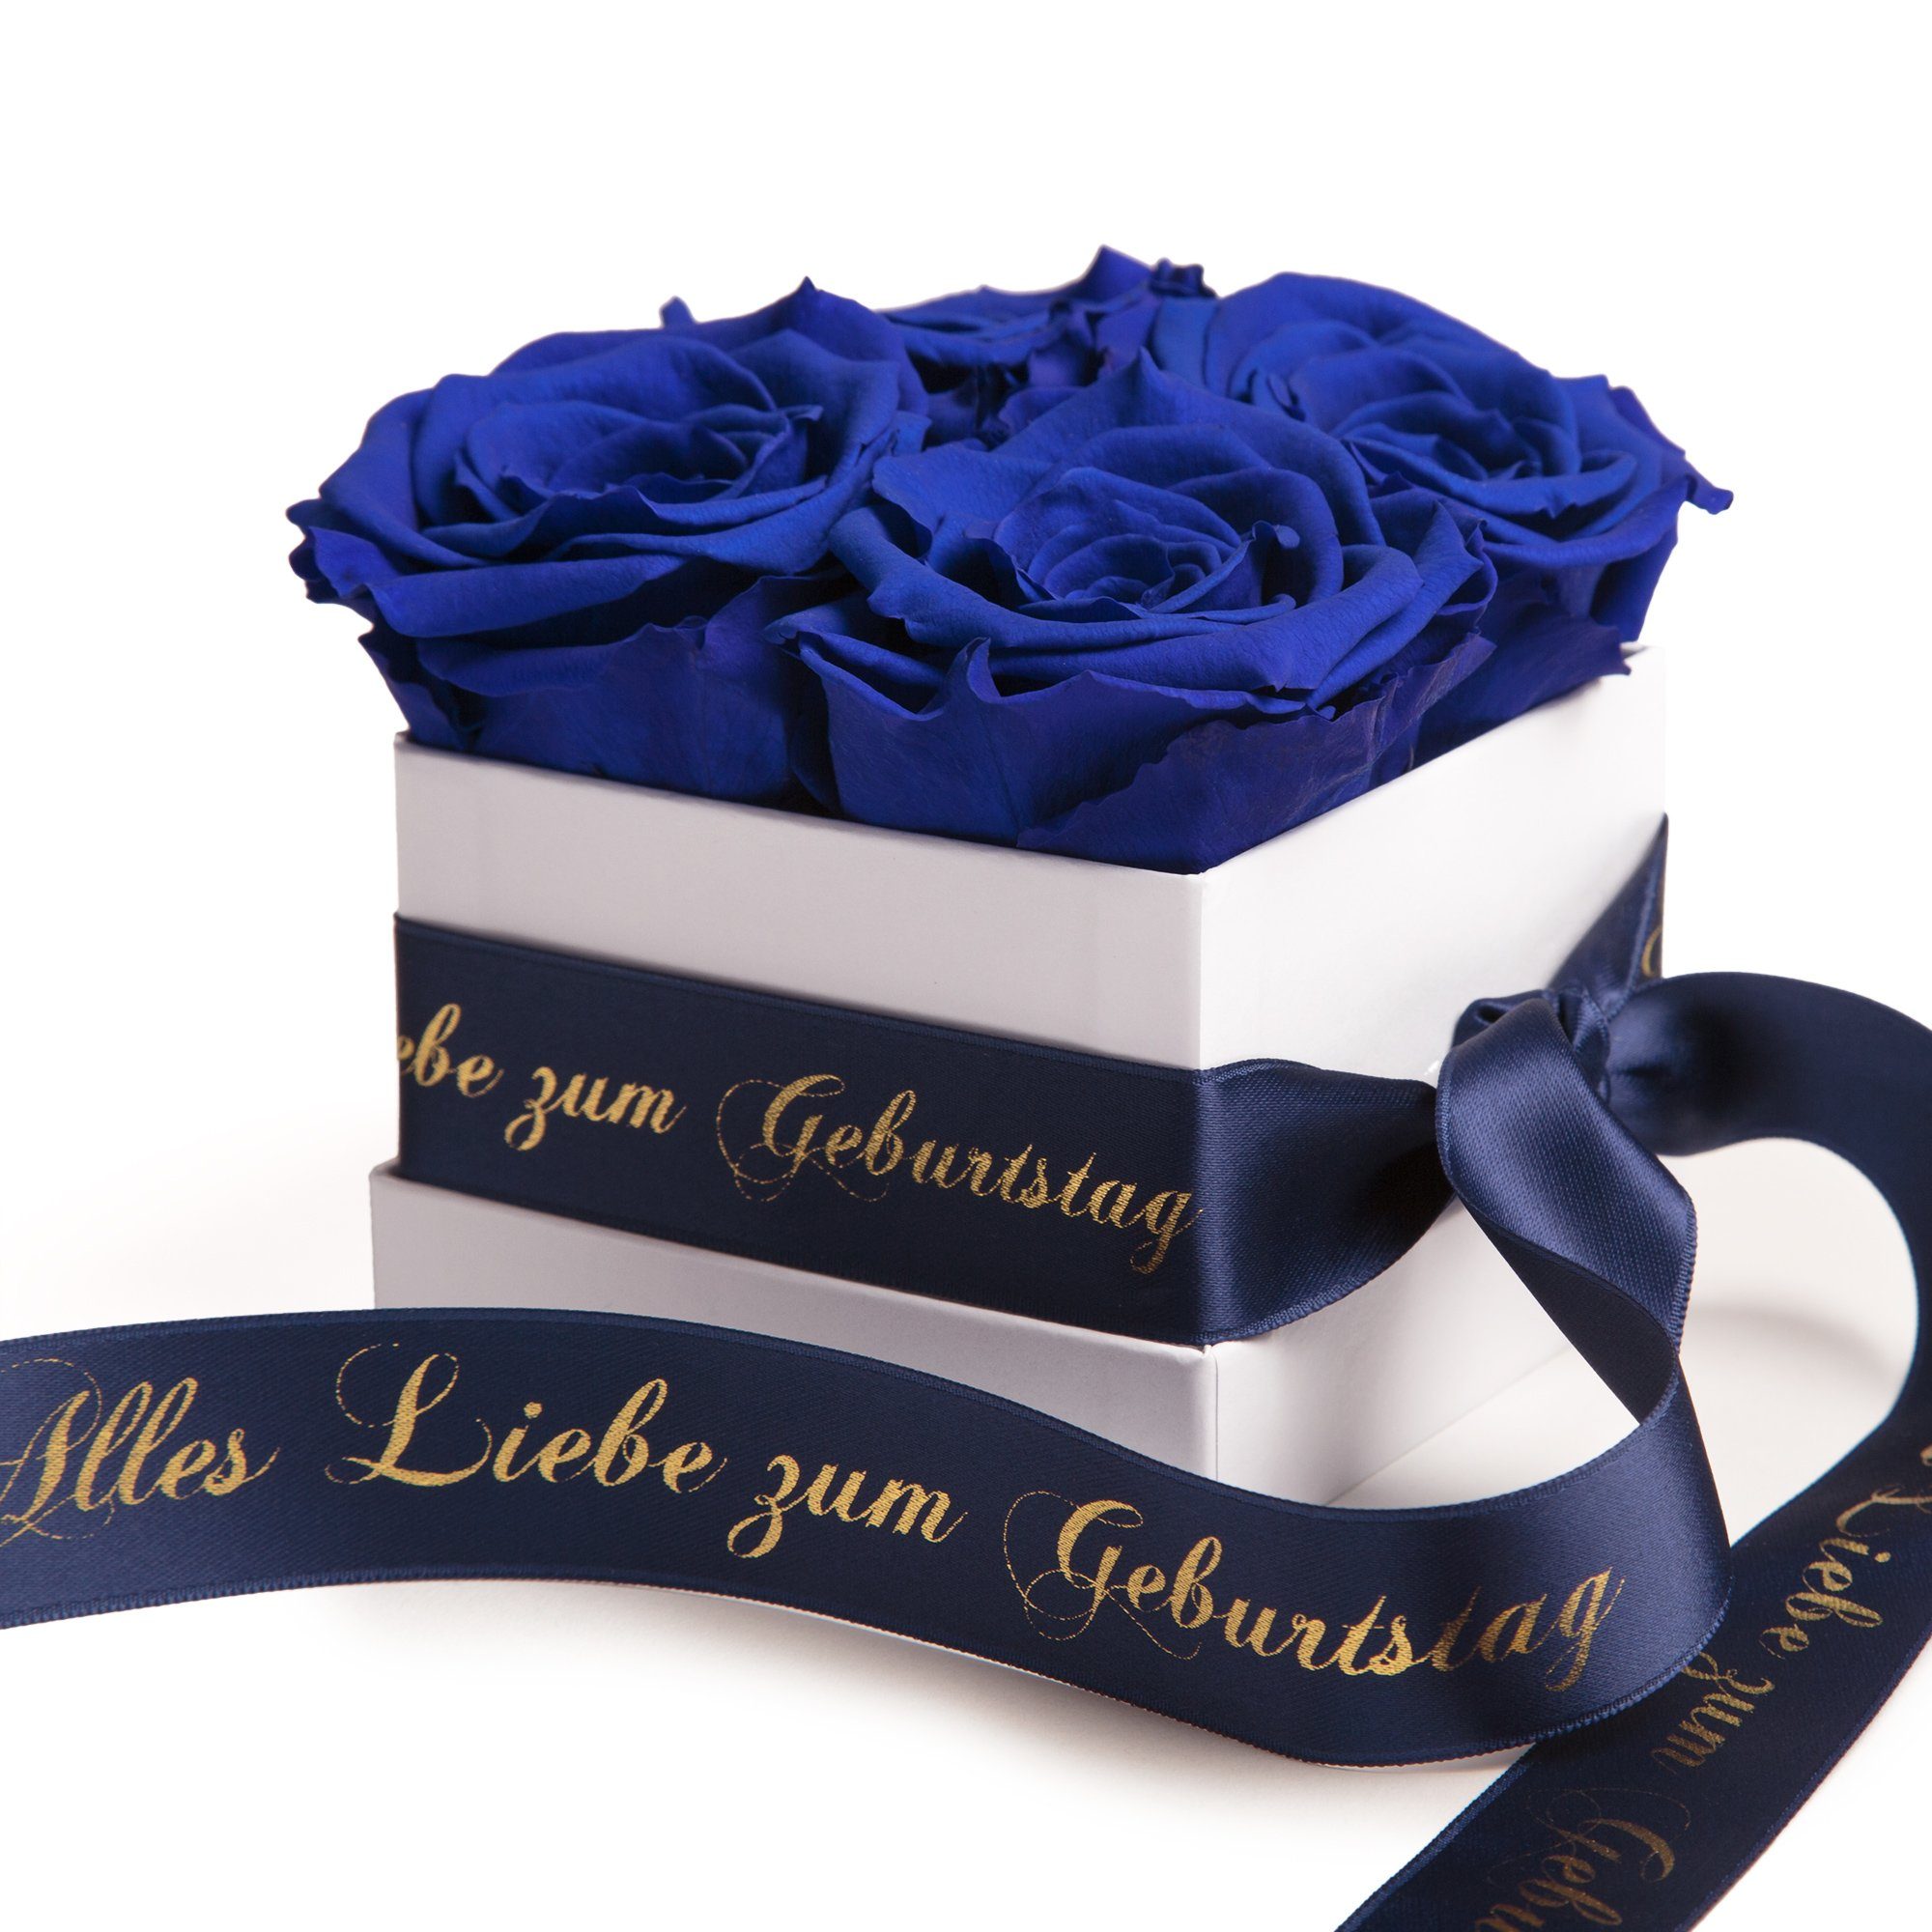 ROSEMARIE SCHULZ Heidelberg Dekoobjekt Infinity Rosenbox Alles Liebe zum Geburtstag Blumen Geschenk, Echte Rose haltbar bis zu 3 Jahre blau